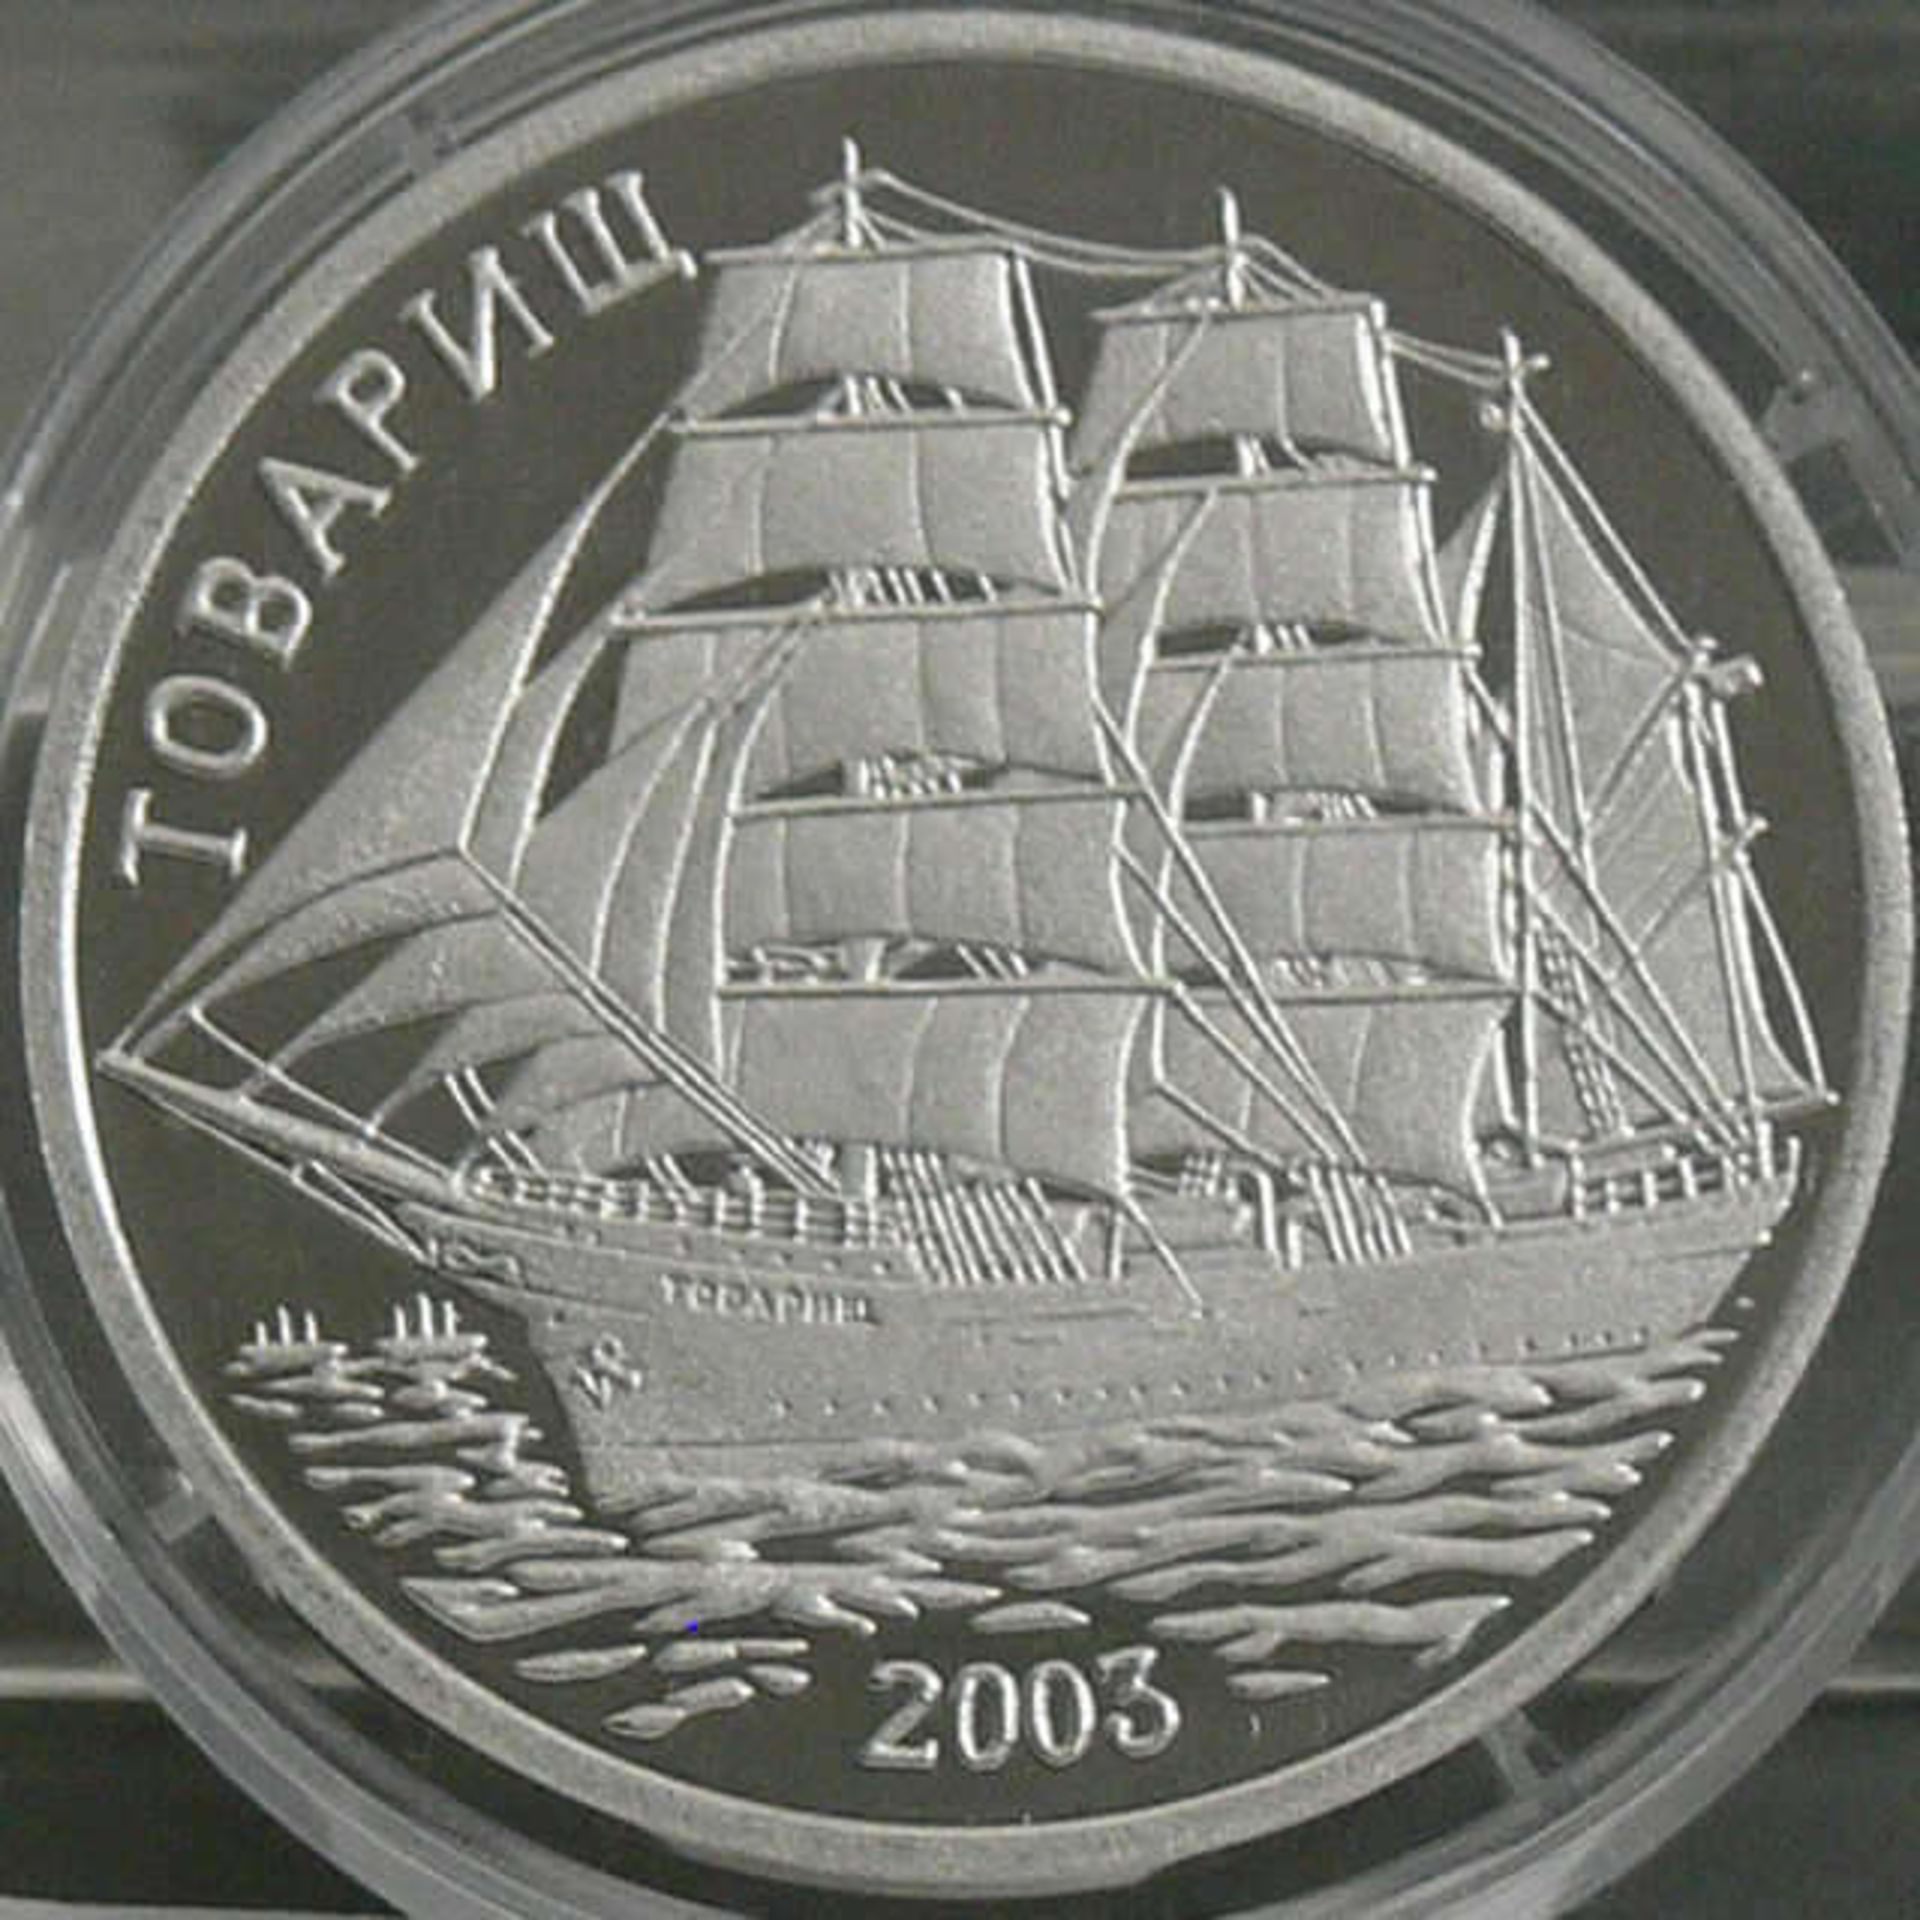 Nord - Korea 2003, 7 Won - Silbermünze "Towarisch". Silber 999. Gewicht: 29 g. Auflage: 3000